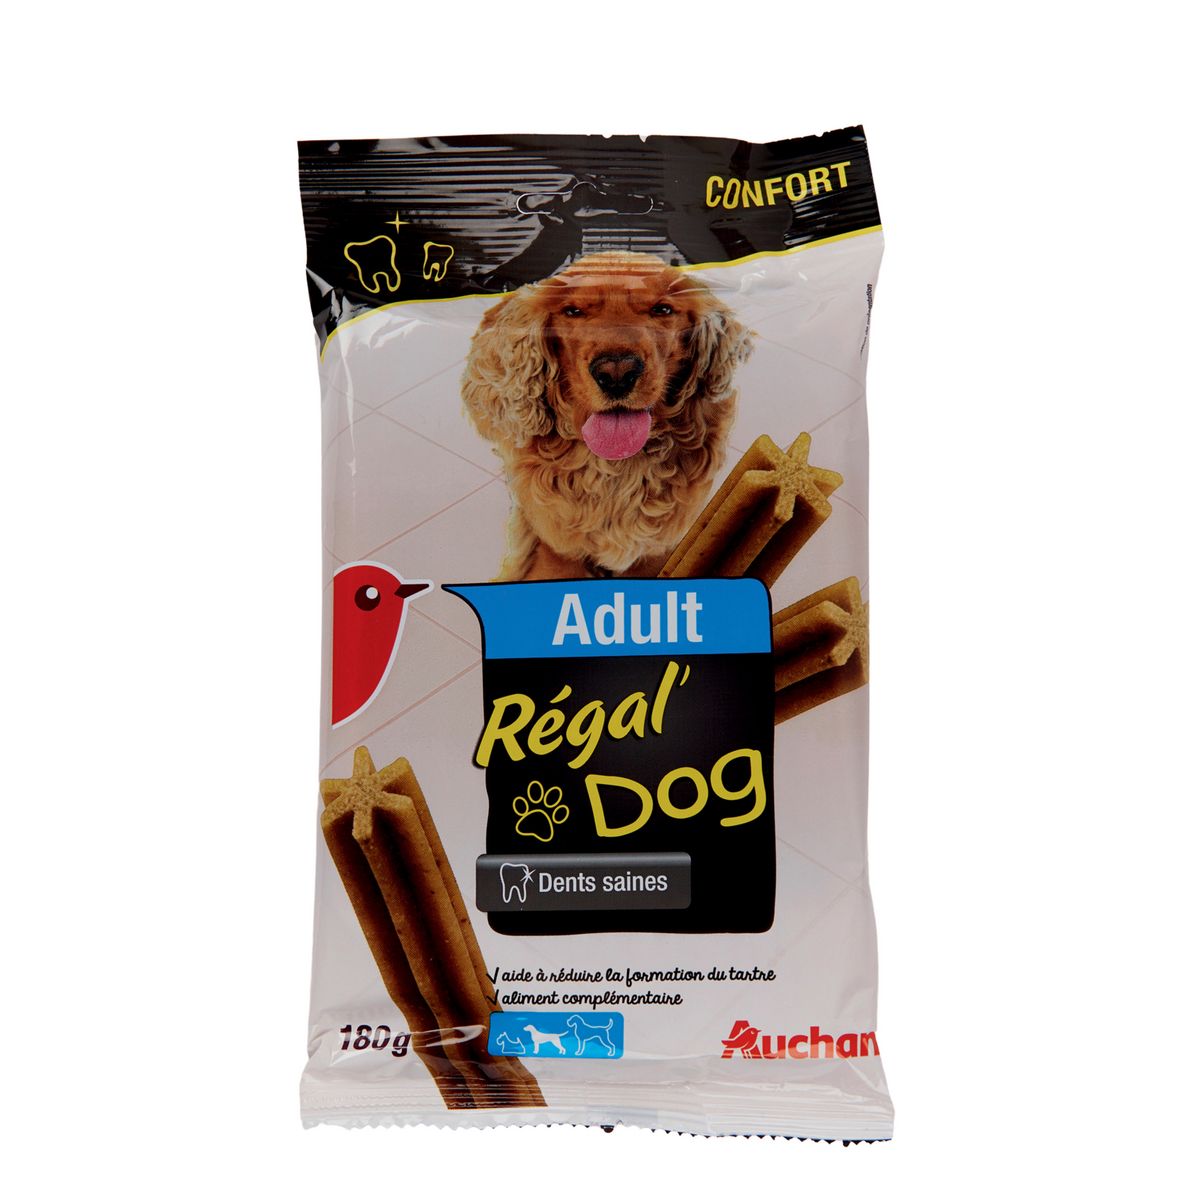 AUCHAN Adult friandises régal'dog sticks hygiène dentaire pour chien moyen 7 pièces 180g